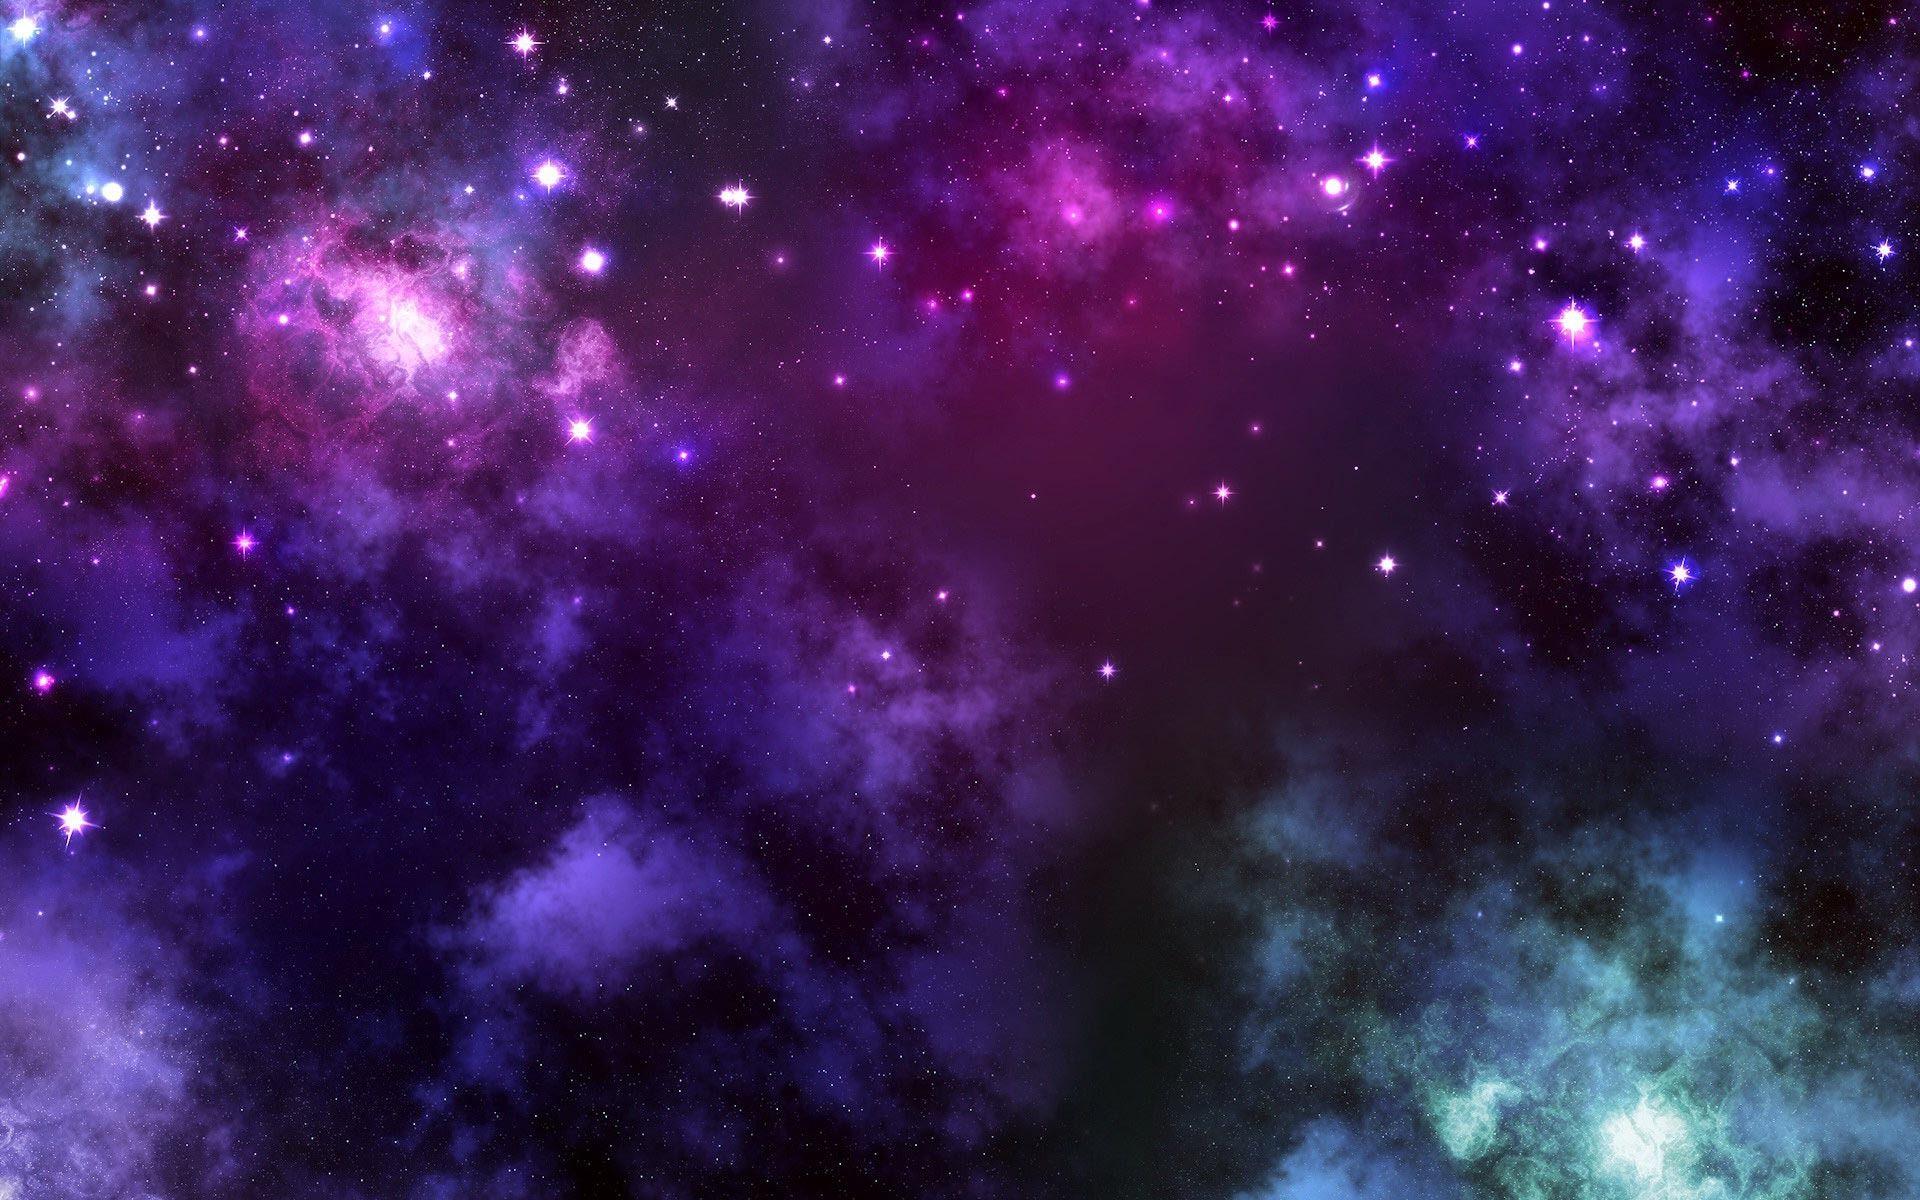 Hình nền vũ trụ màu tím sẽ đưa bạn vào một hành tinh xa xôi với không gian rộng lớn và những ngôi sao lấp lánh. Màu tím đậm sẽ mang đến một không khí trầm tư và bí ẩn. Hãy cùng khám phá bức tranh vũ trụ đầy mê hoặc này!